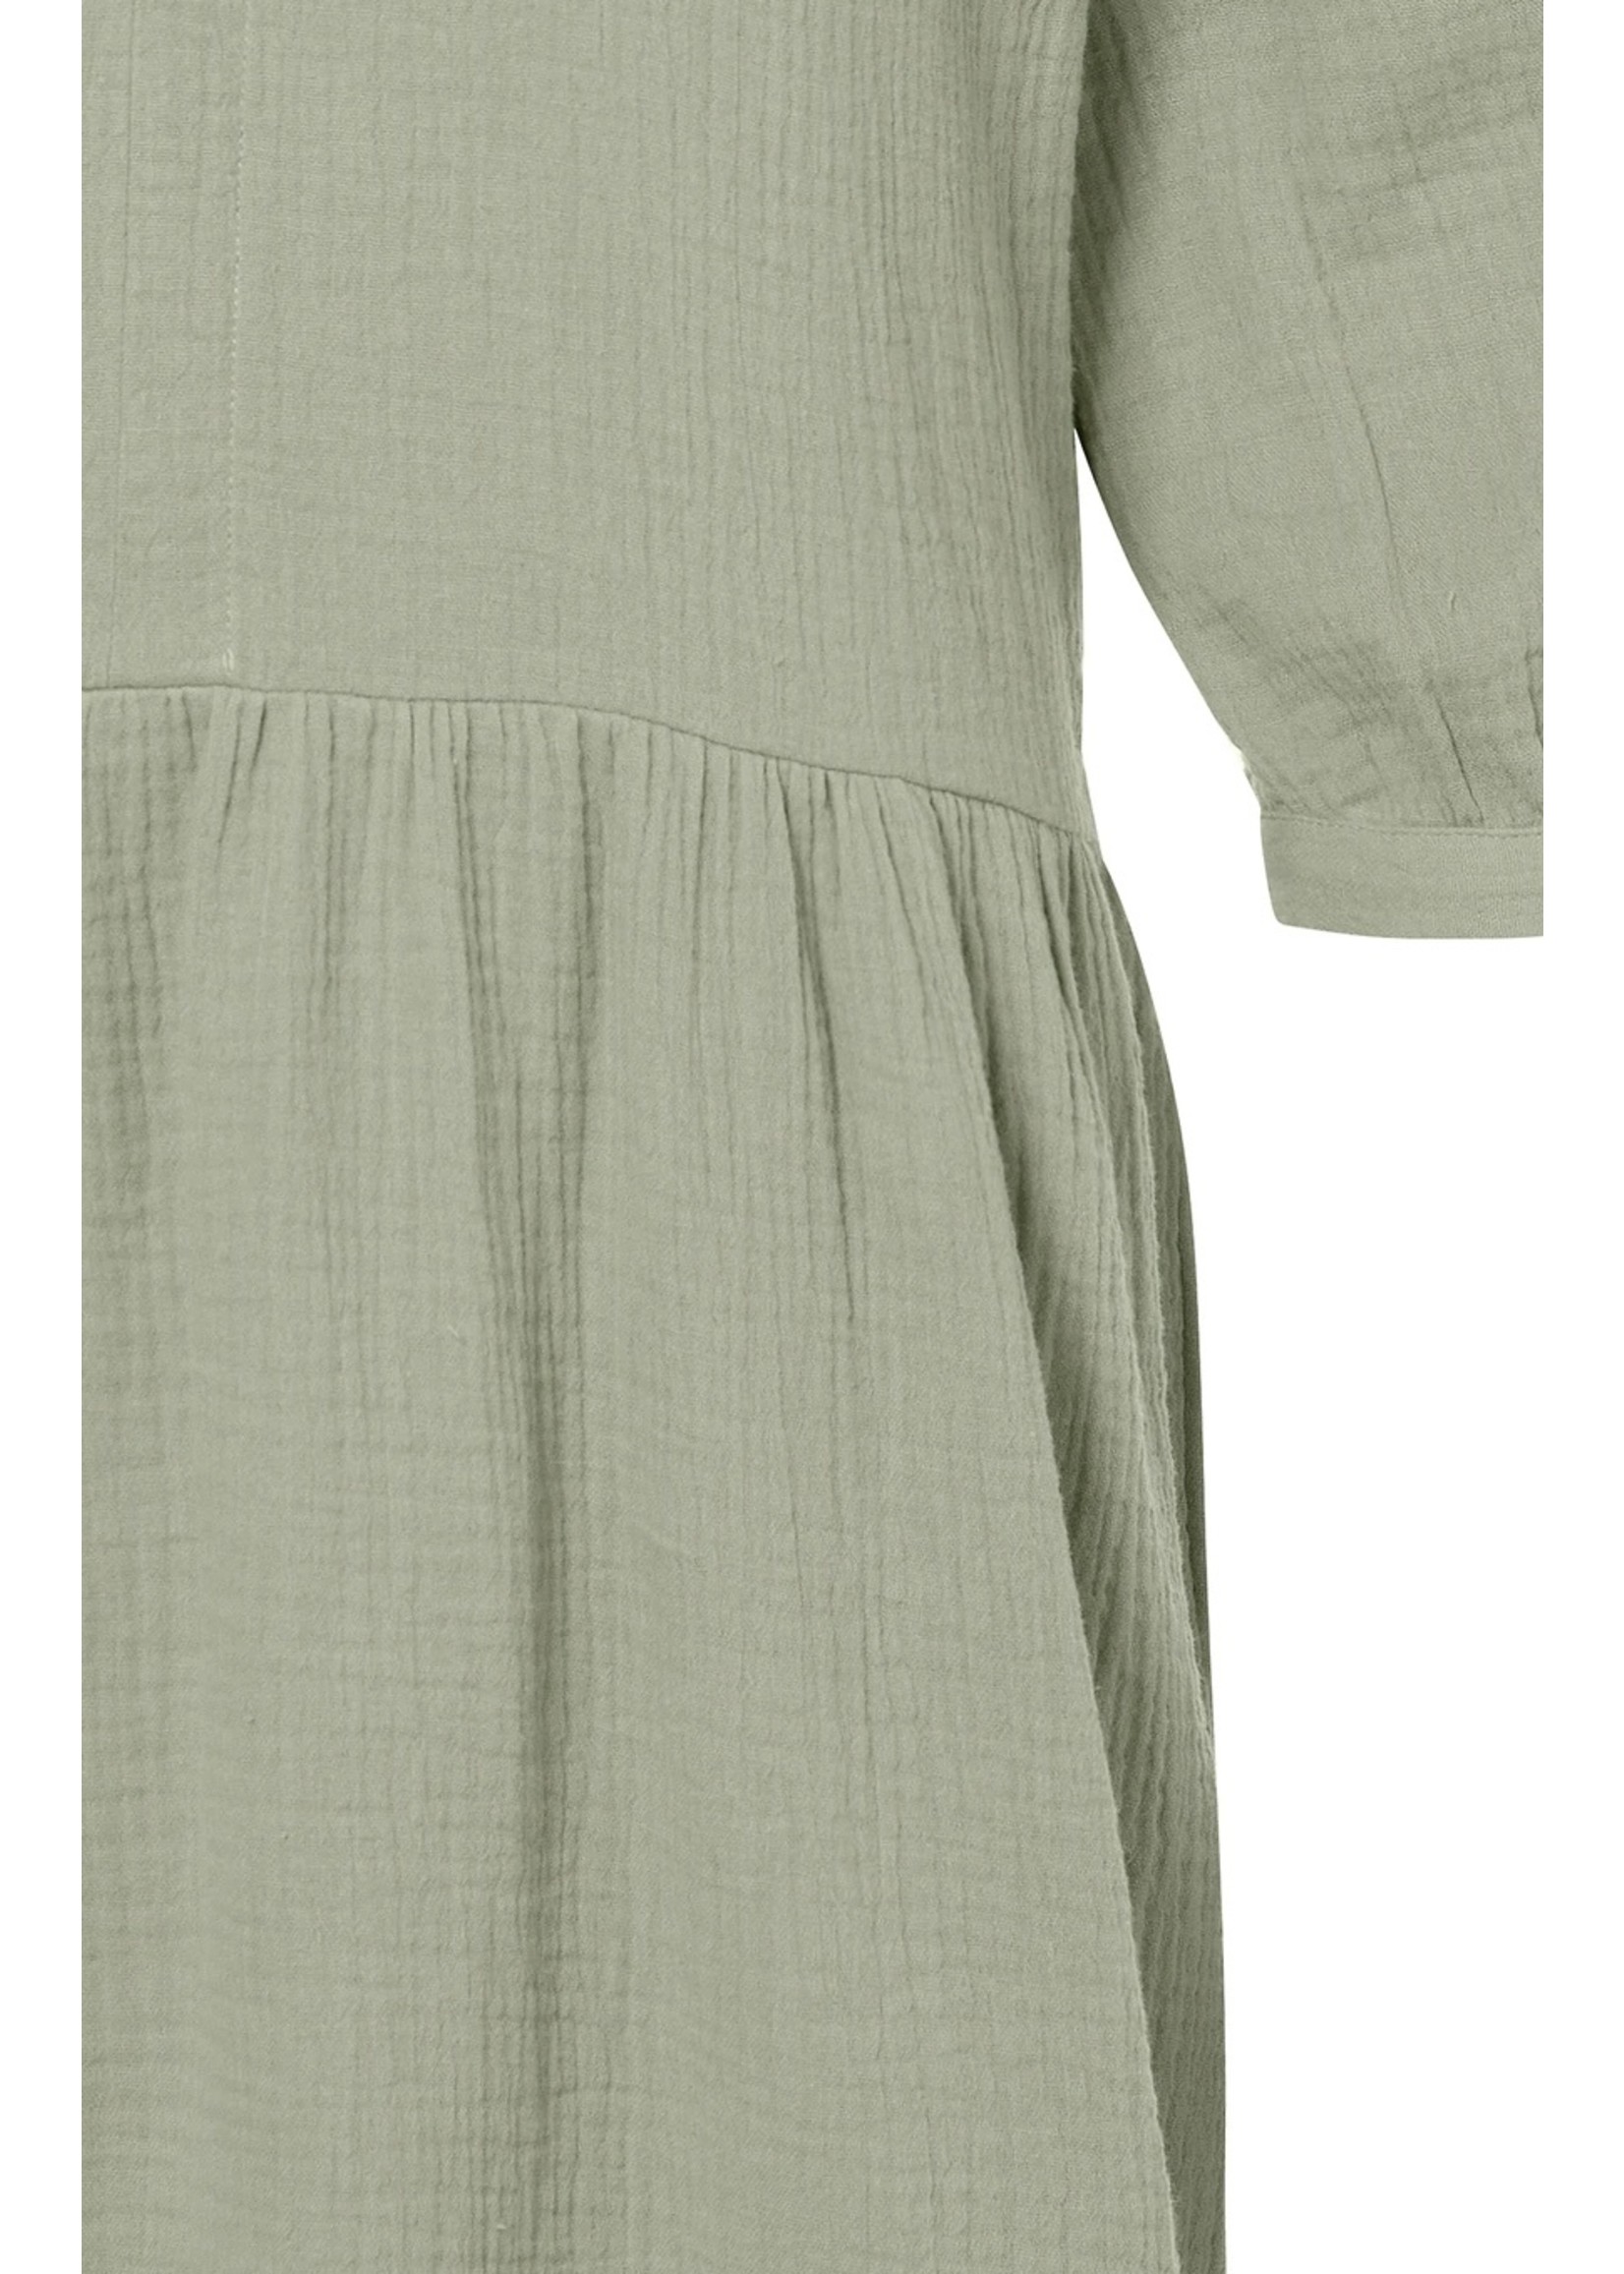 Yaya Yaya - Mini Long Sleeve Dress in Cotton